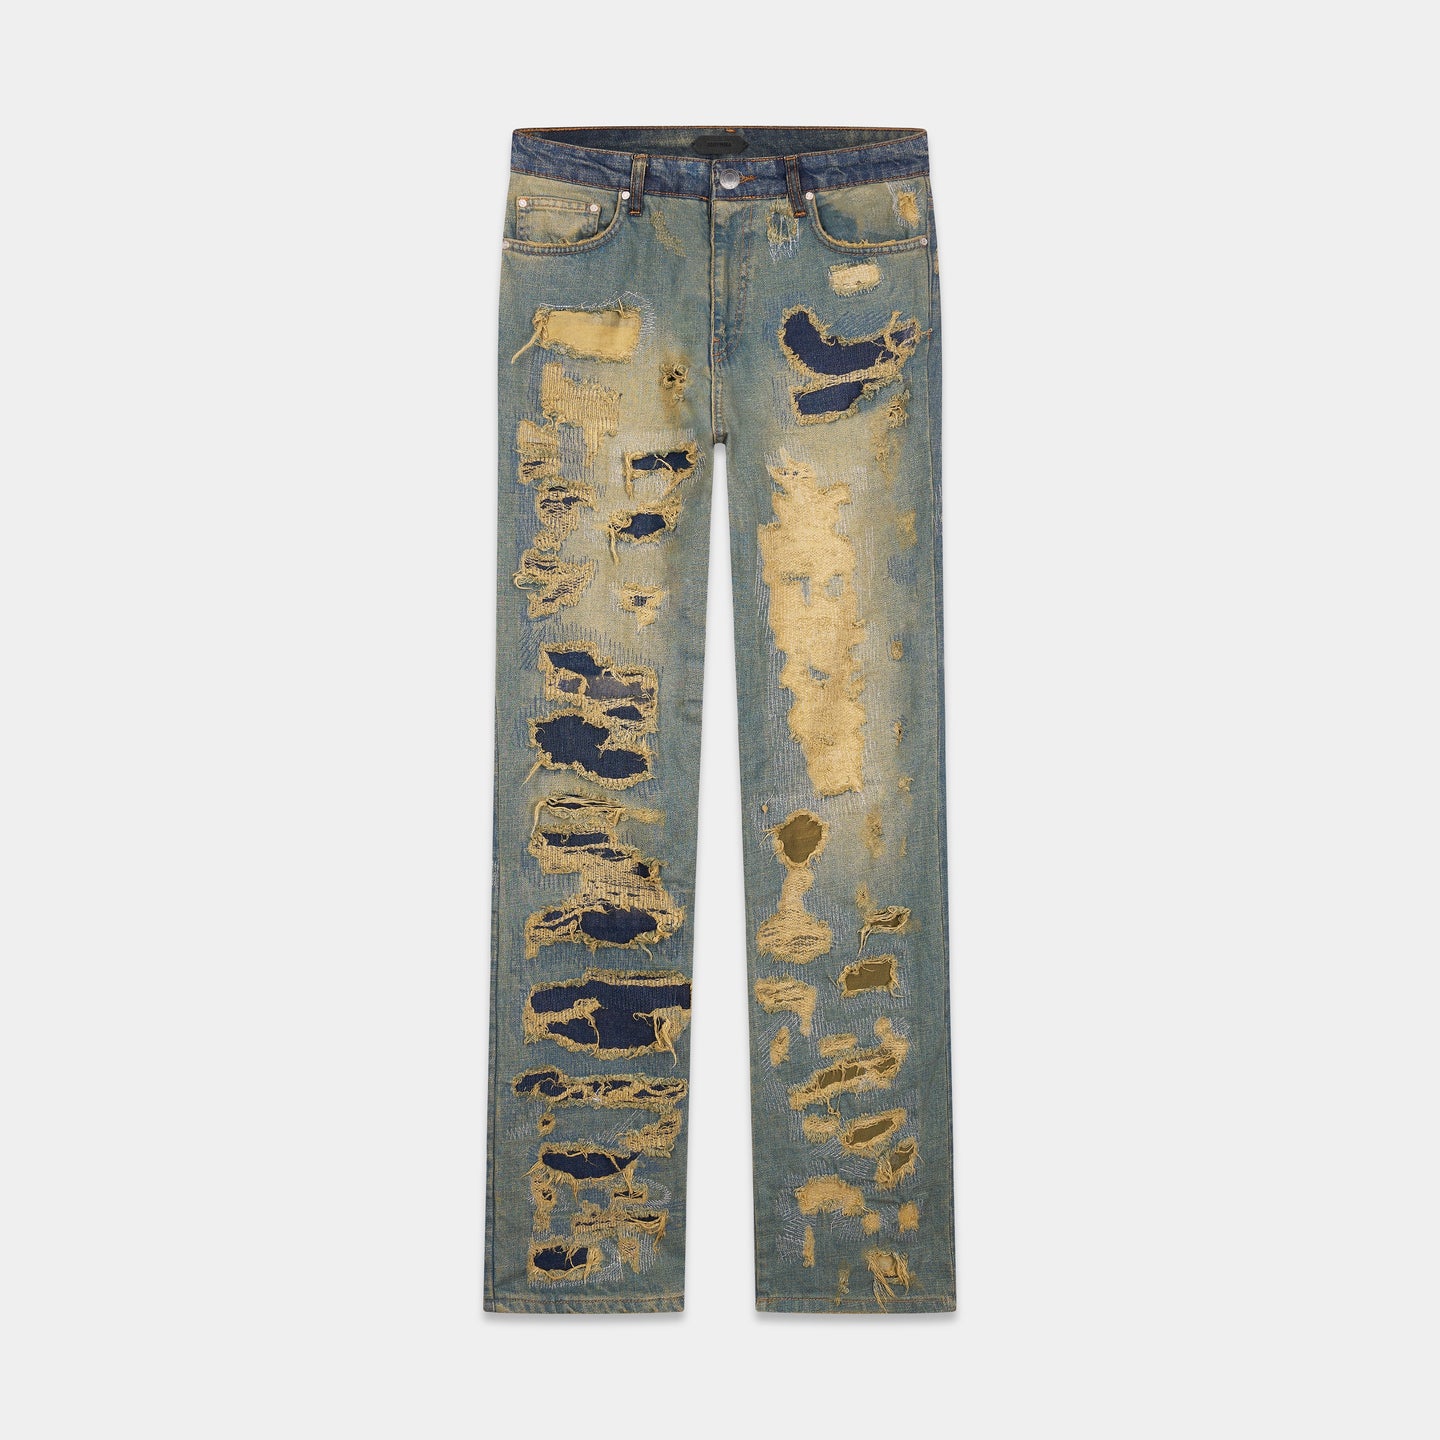 Ernmark: More jeans repair